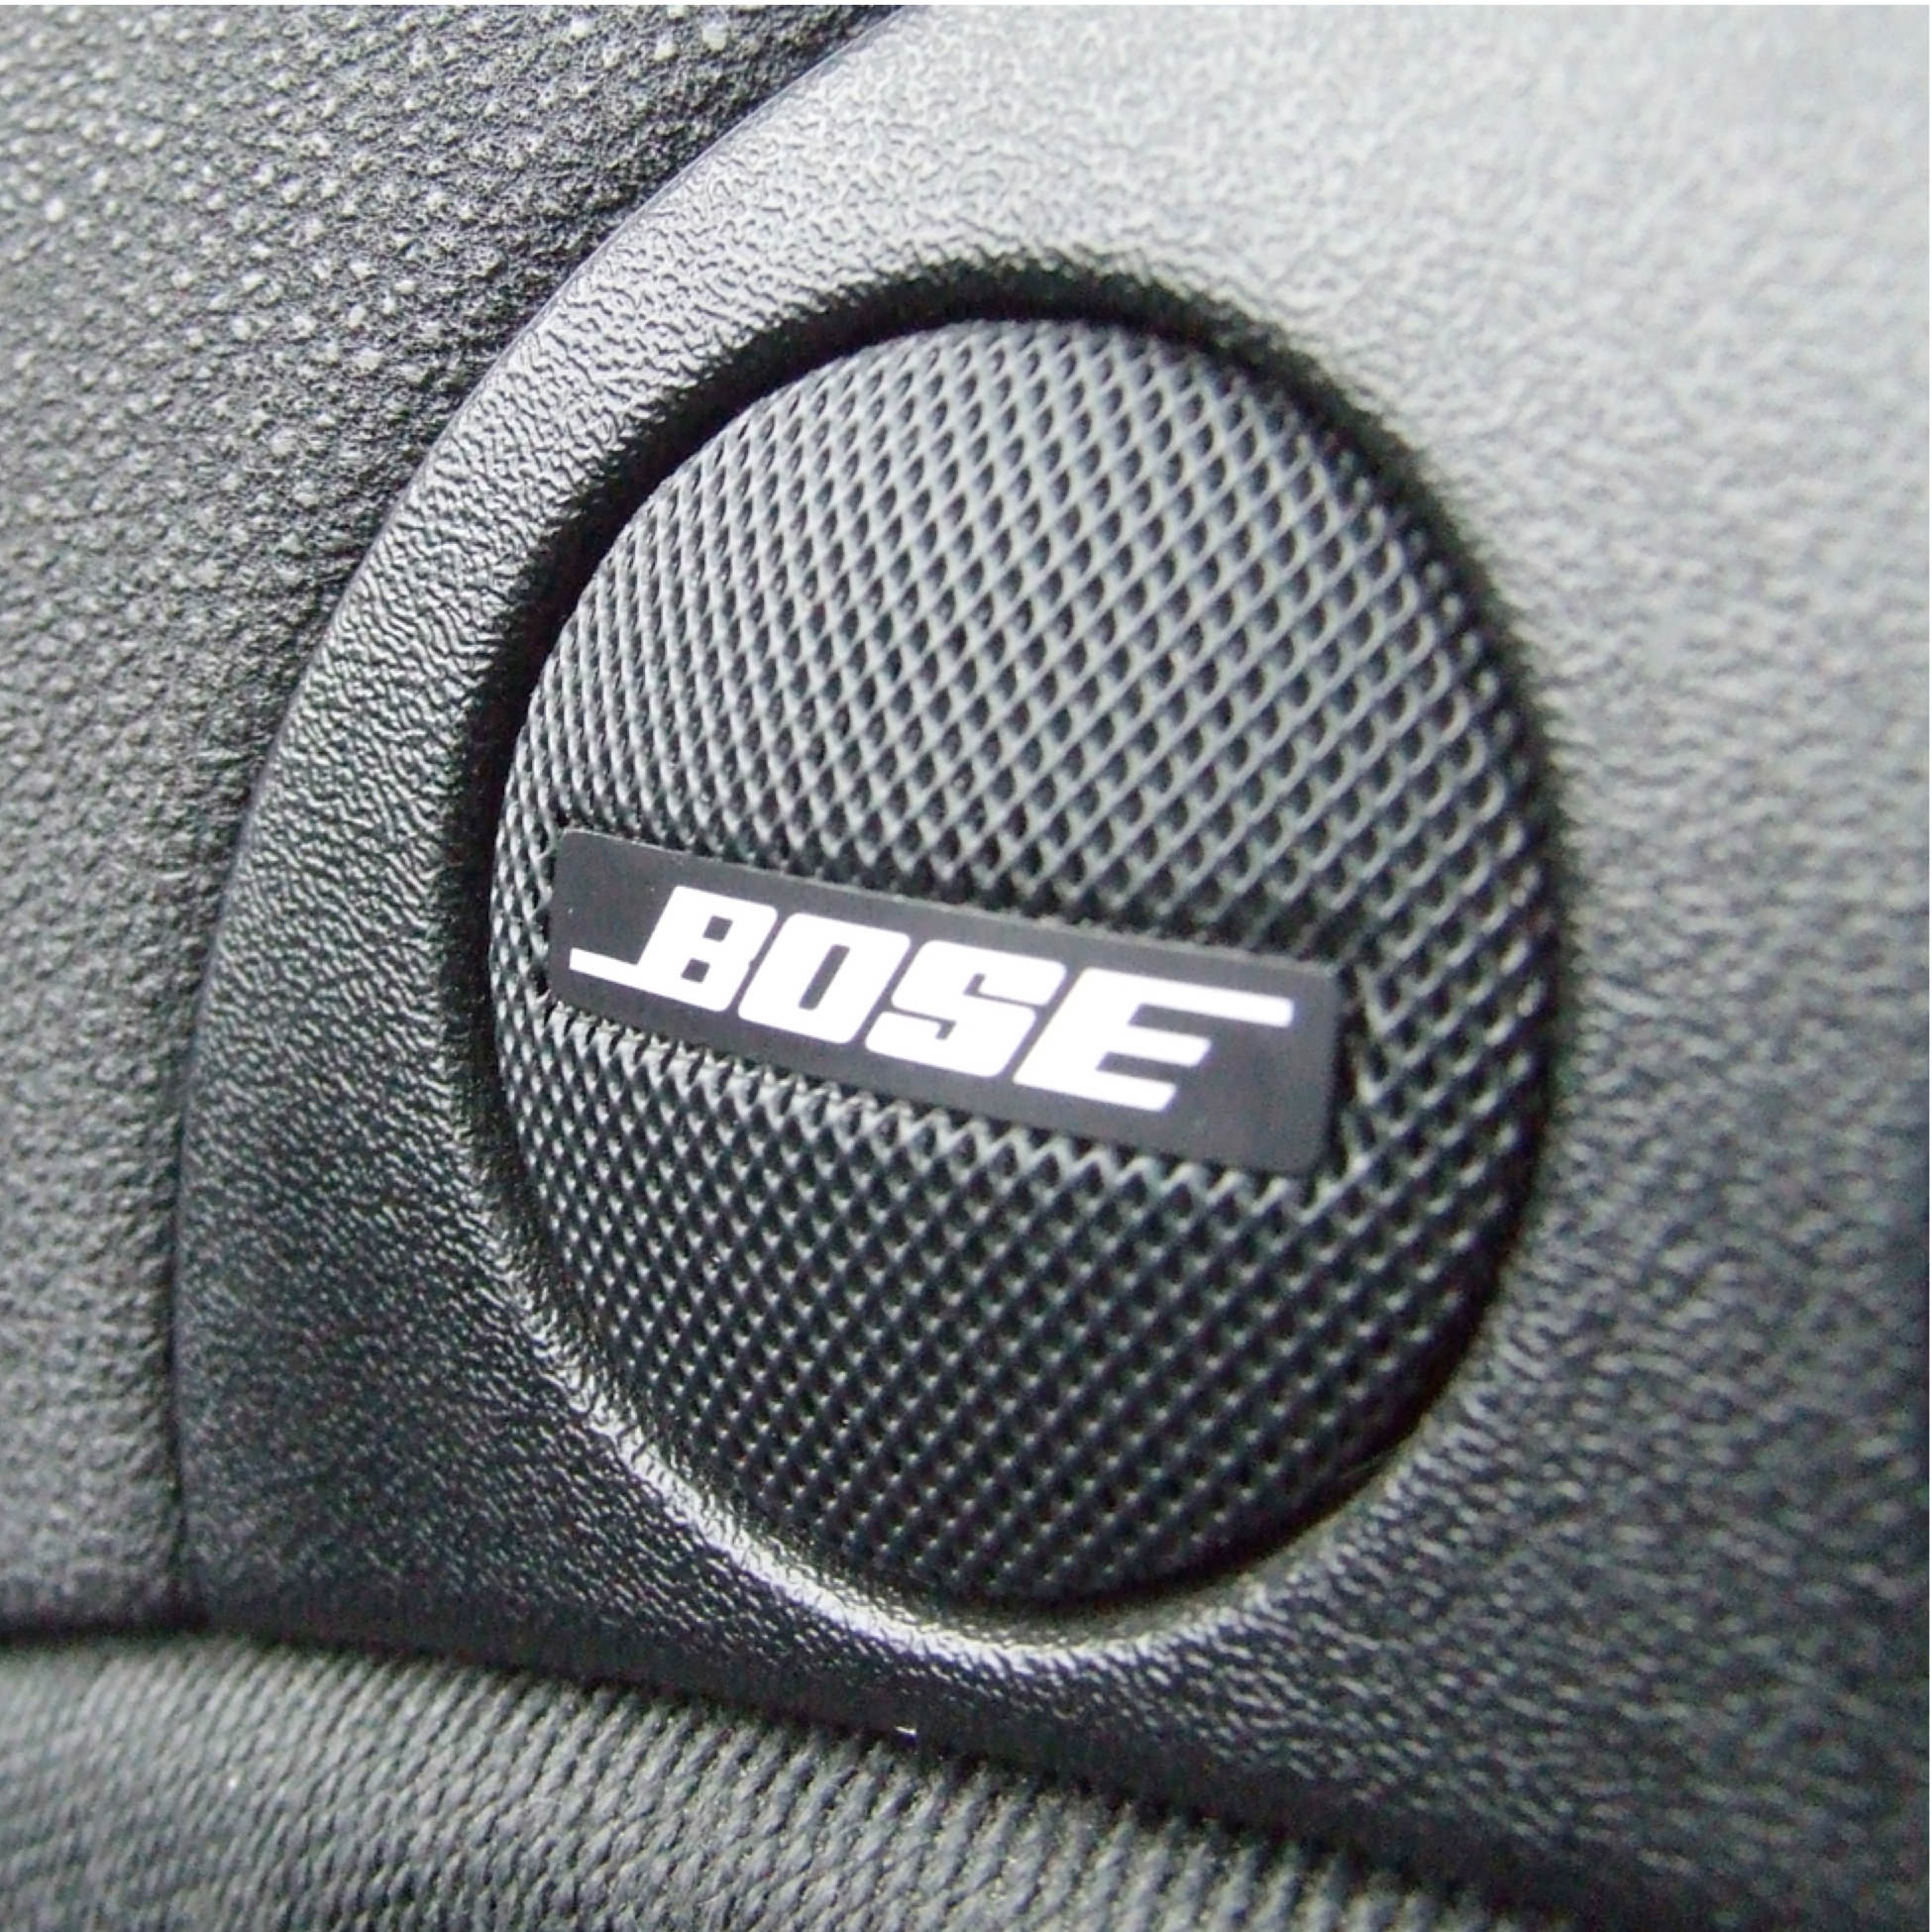 Bose авто. Звуковая система в машину Bose. Bose надпись. Топ аудиосистем для авто. Аудио Bose в авто.